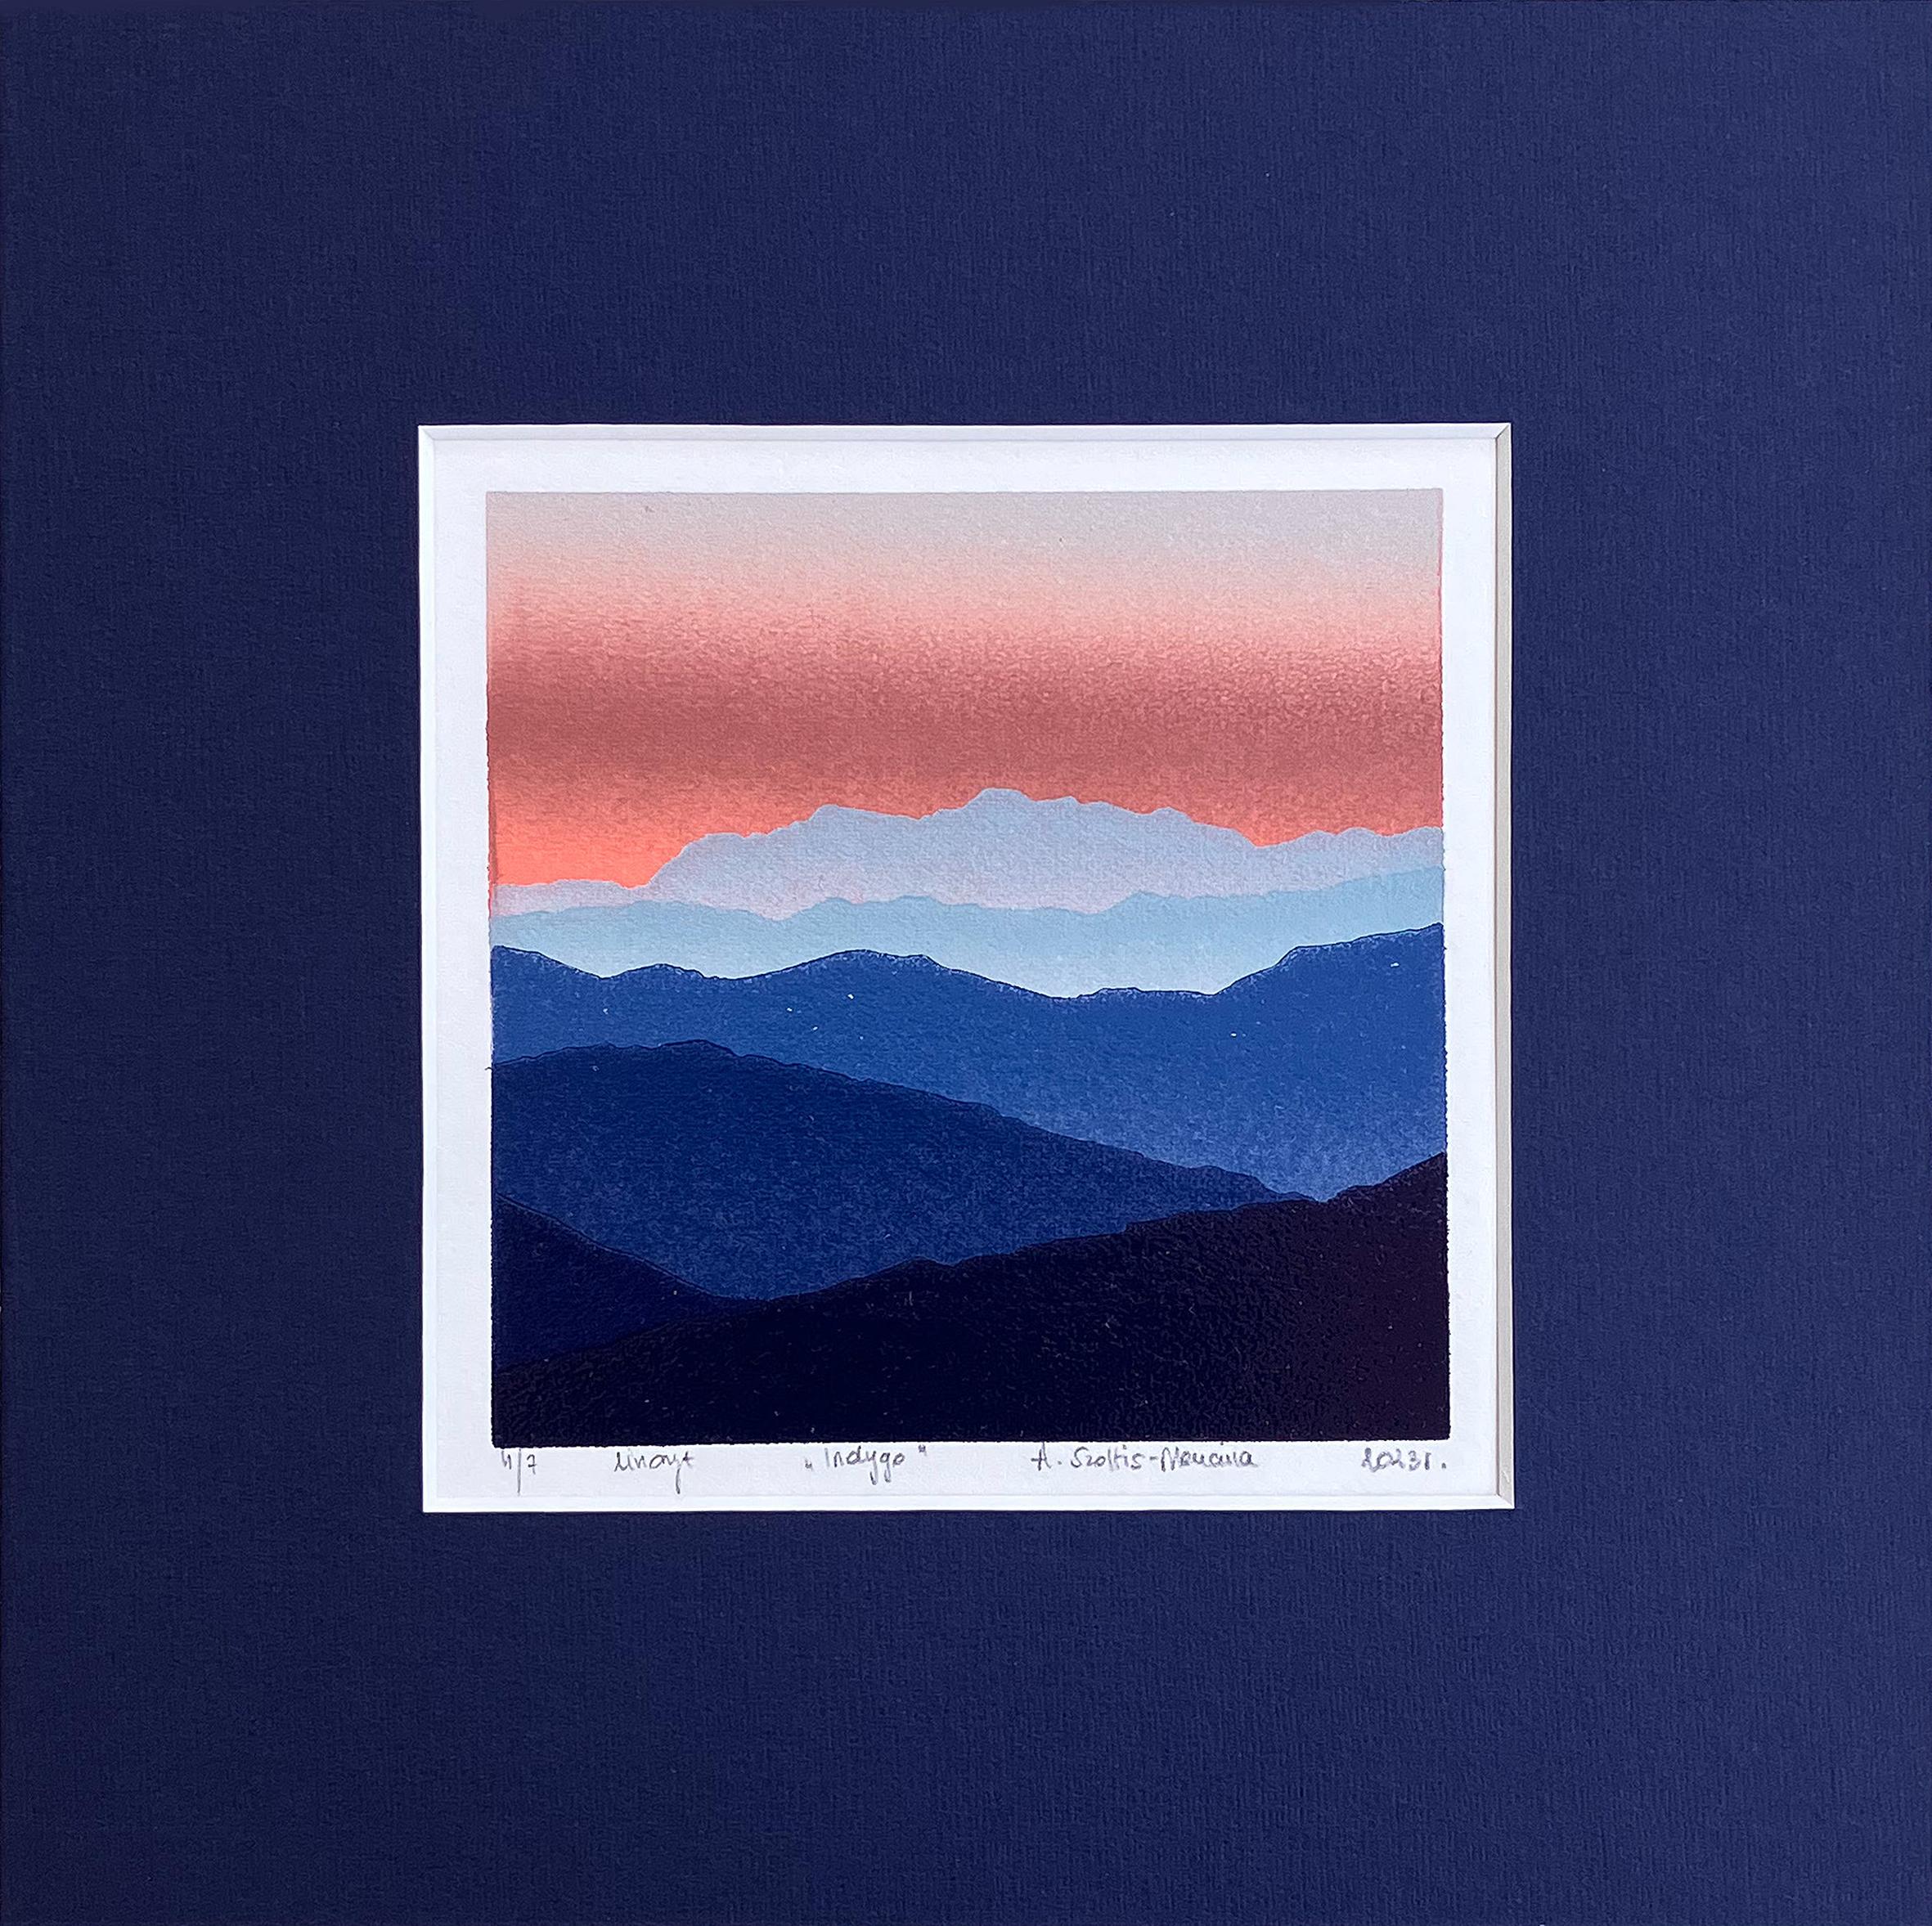 Aneta Szoltis-Mencina Landscape Print – Indigo - Berge Landschaft, handgefertigt im Linoschliff  Limitierte Auflage Druck Einzigartig 4/7